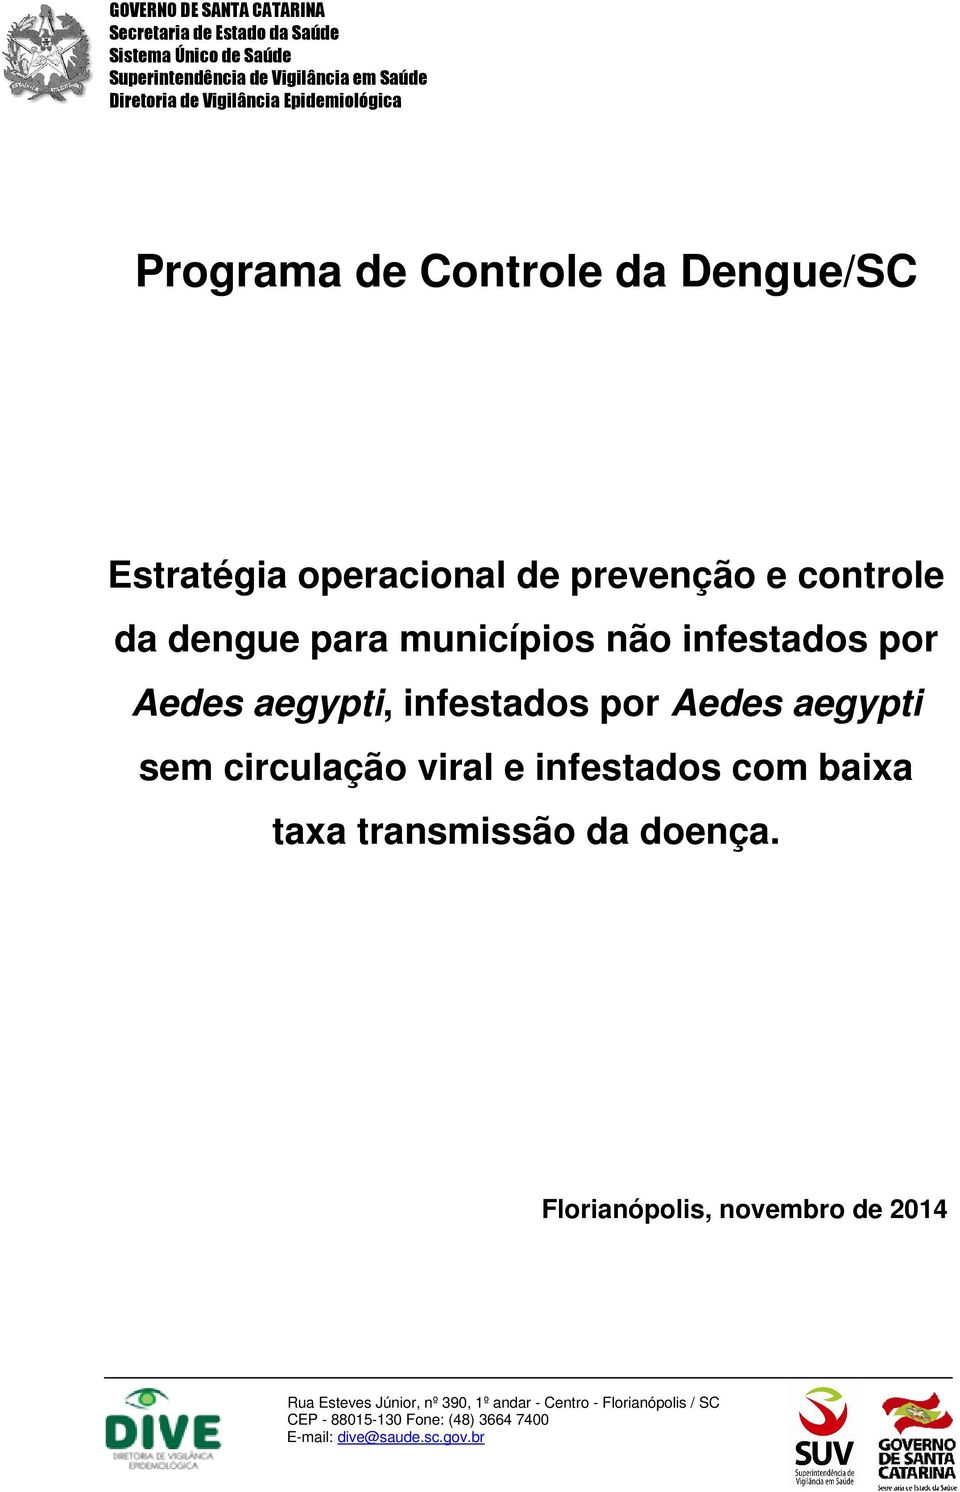 Aedes aegypti, infestados por Aedes aegypti sem circulação viral e